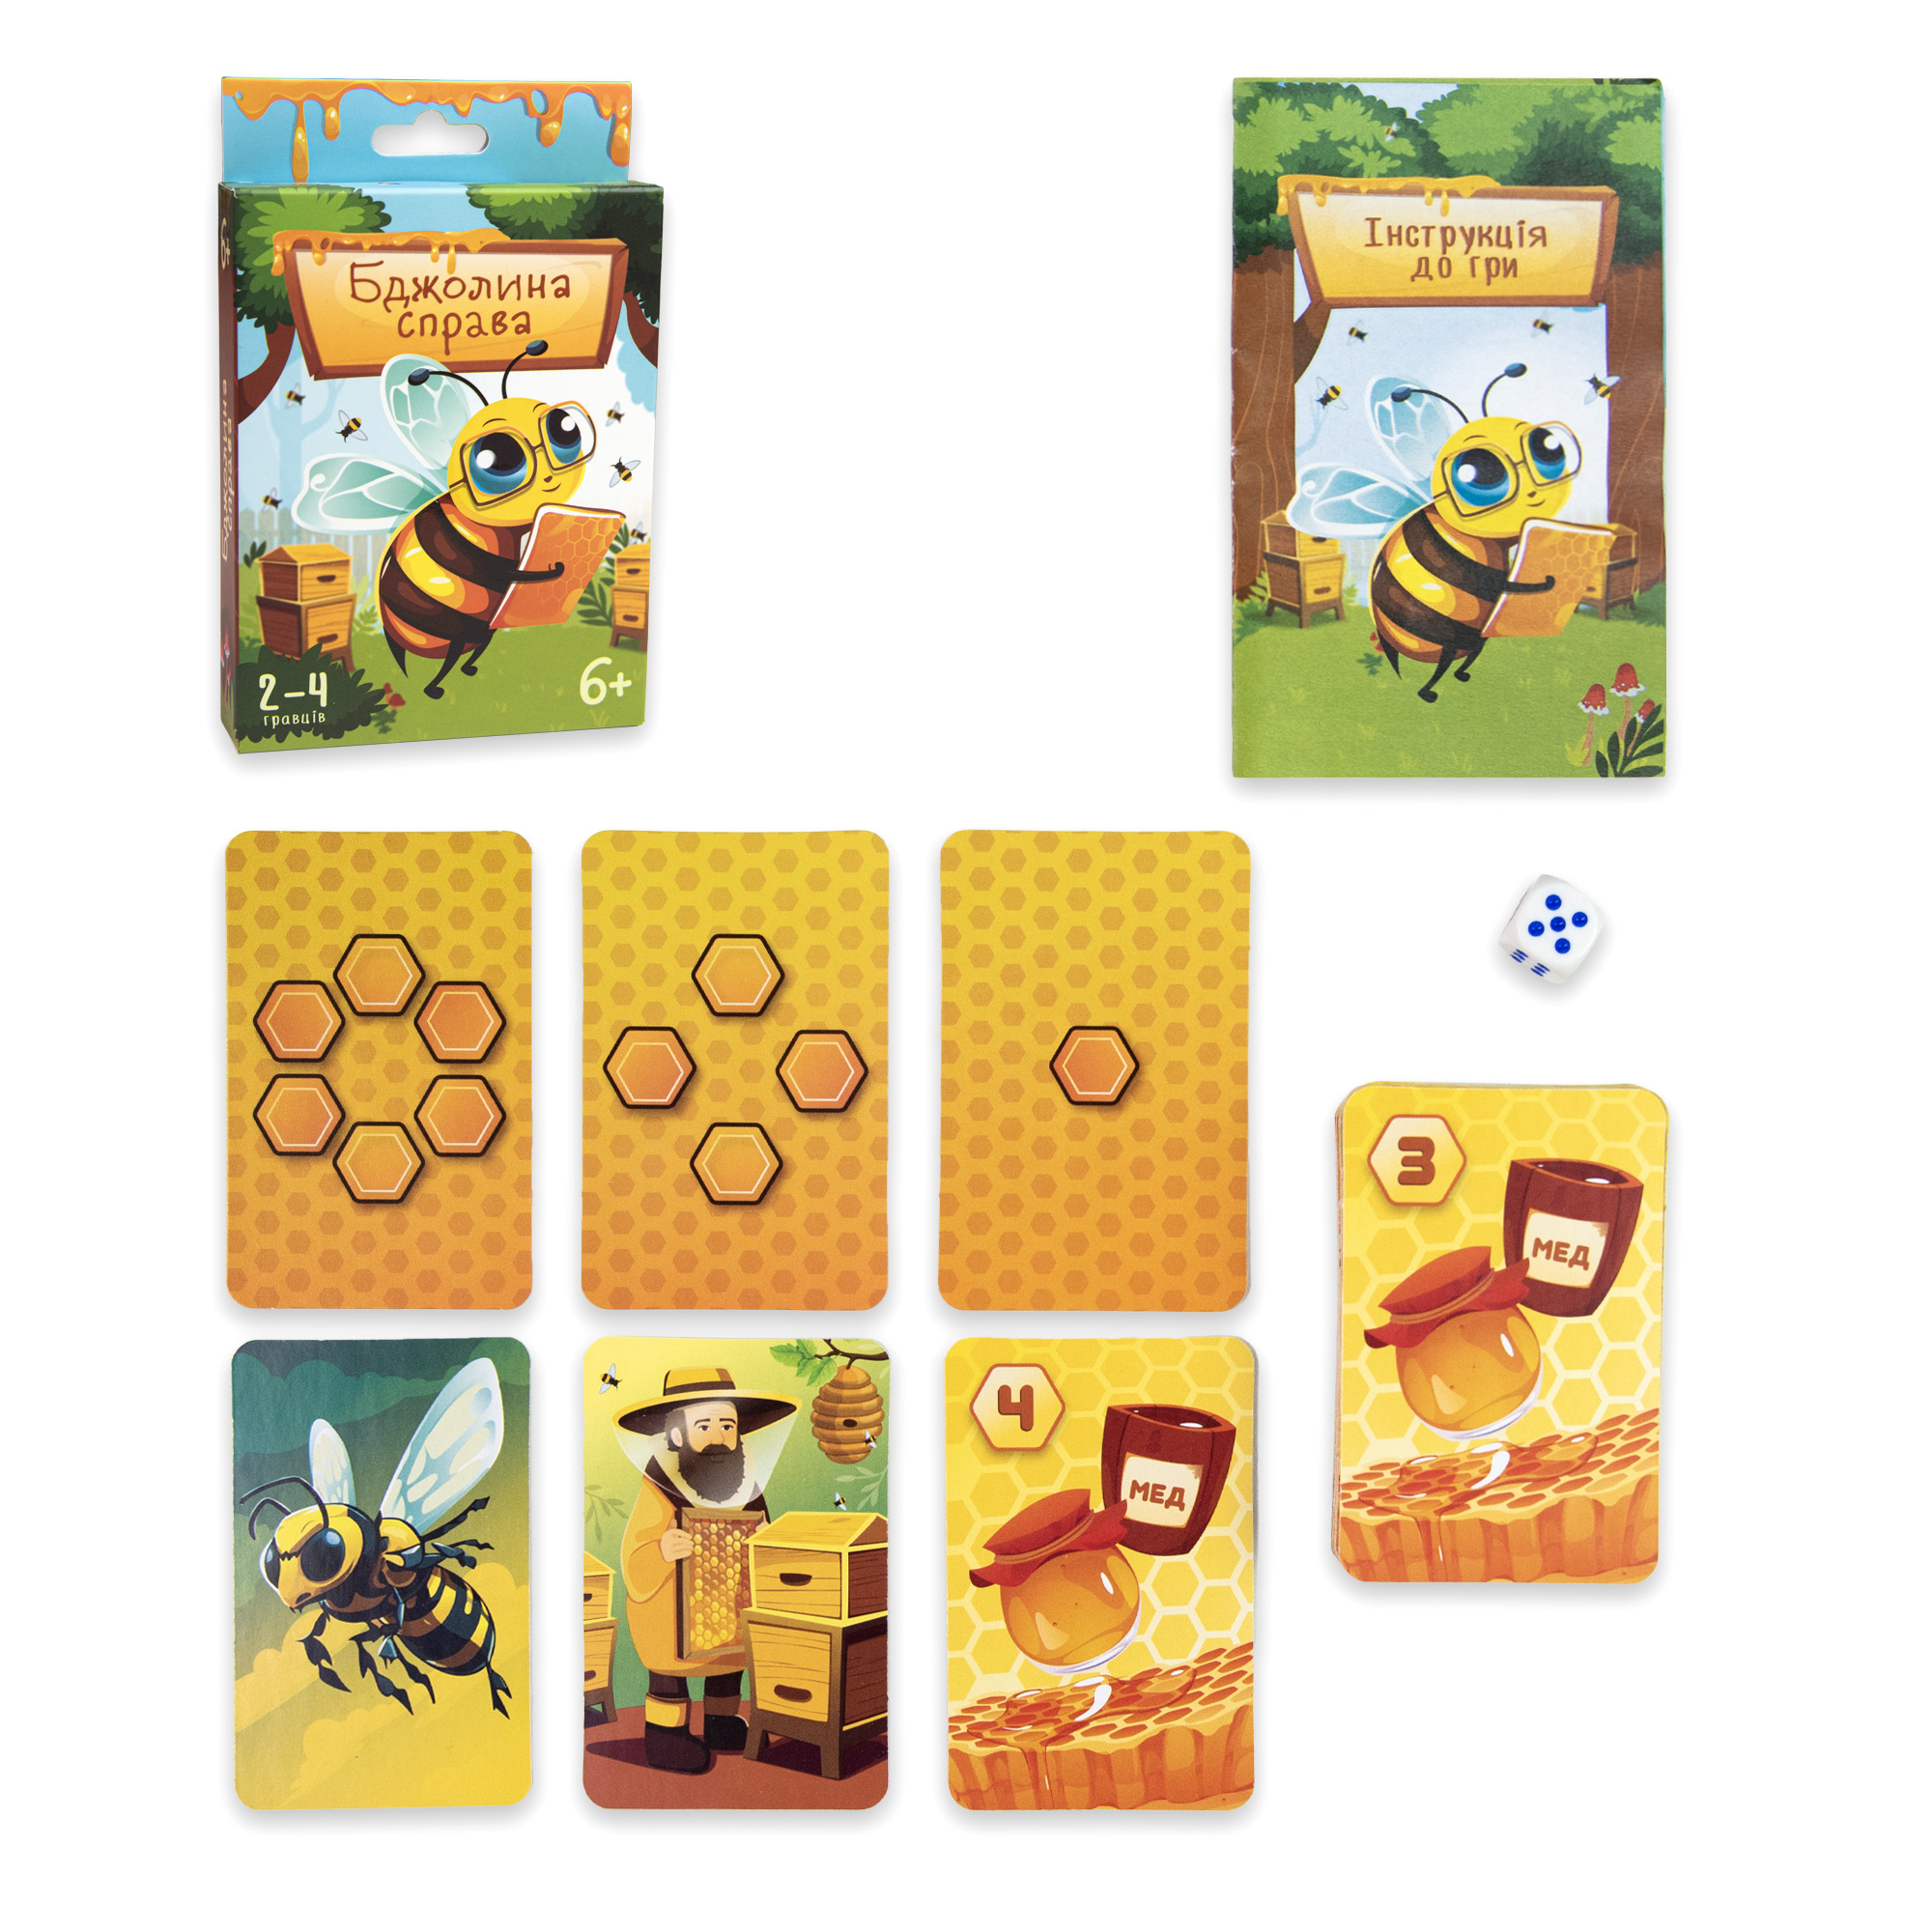 Brettspiel Strateg „Biene rechts“ auf Ukrainisch (30785)